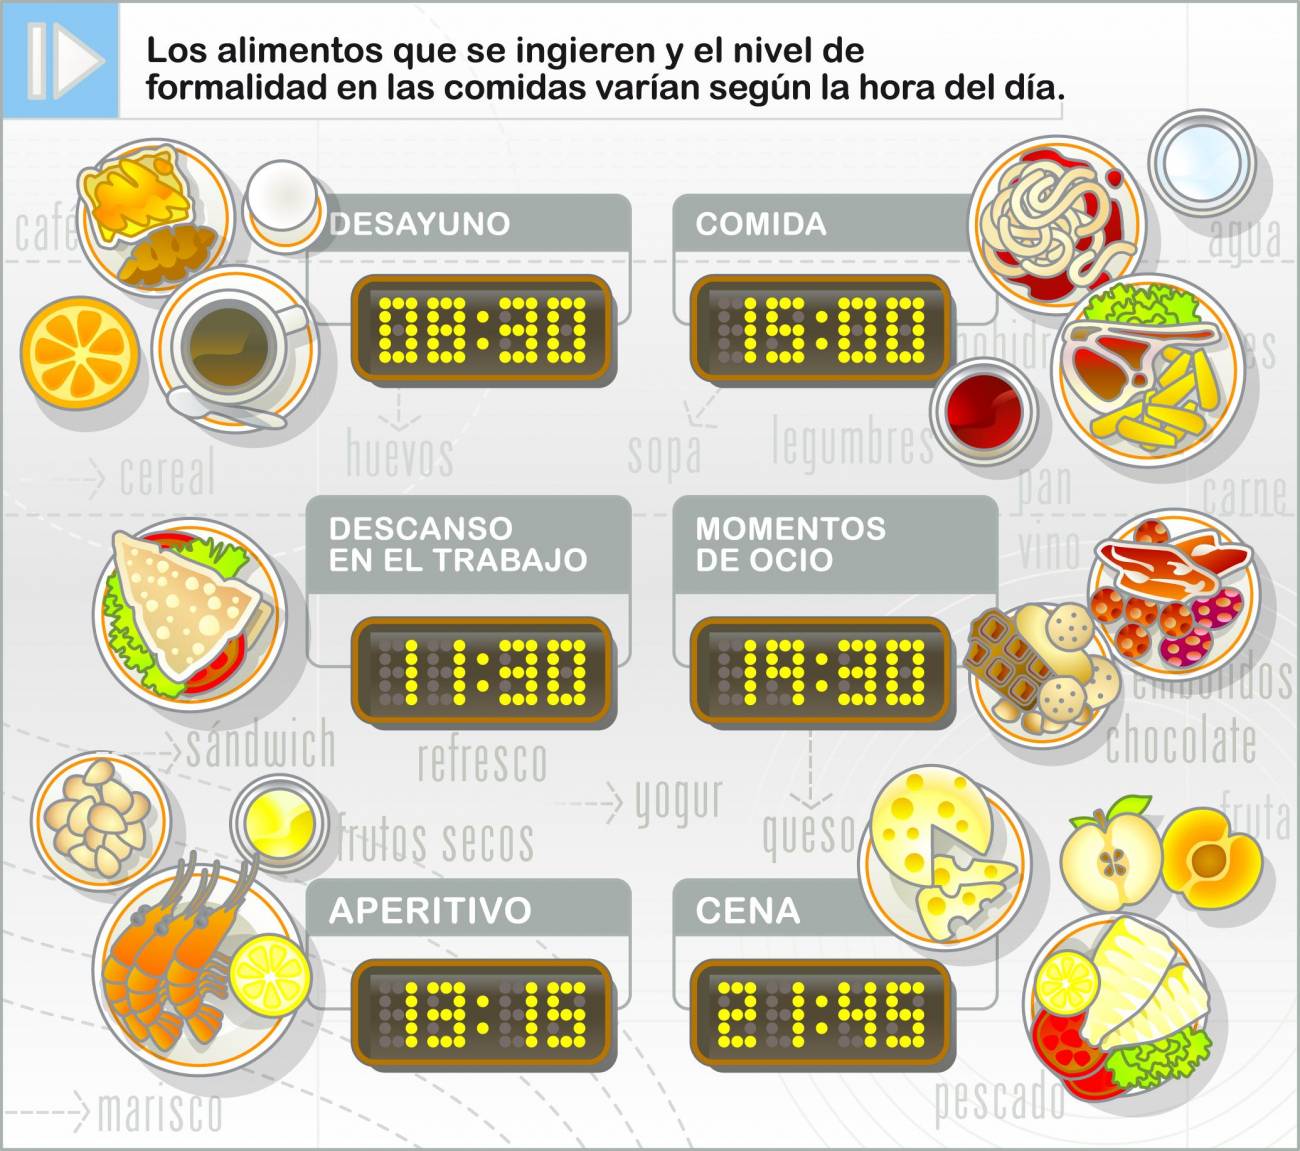 El 66% de la población adulta que reside en España no come fruta los fines de semana